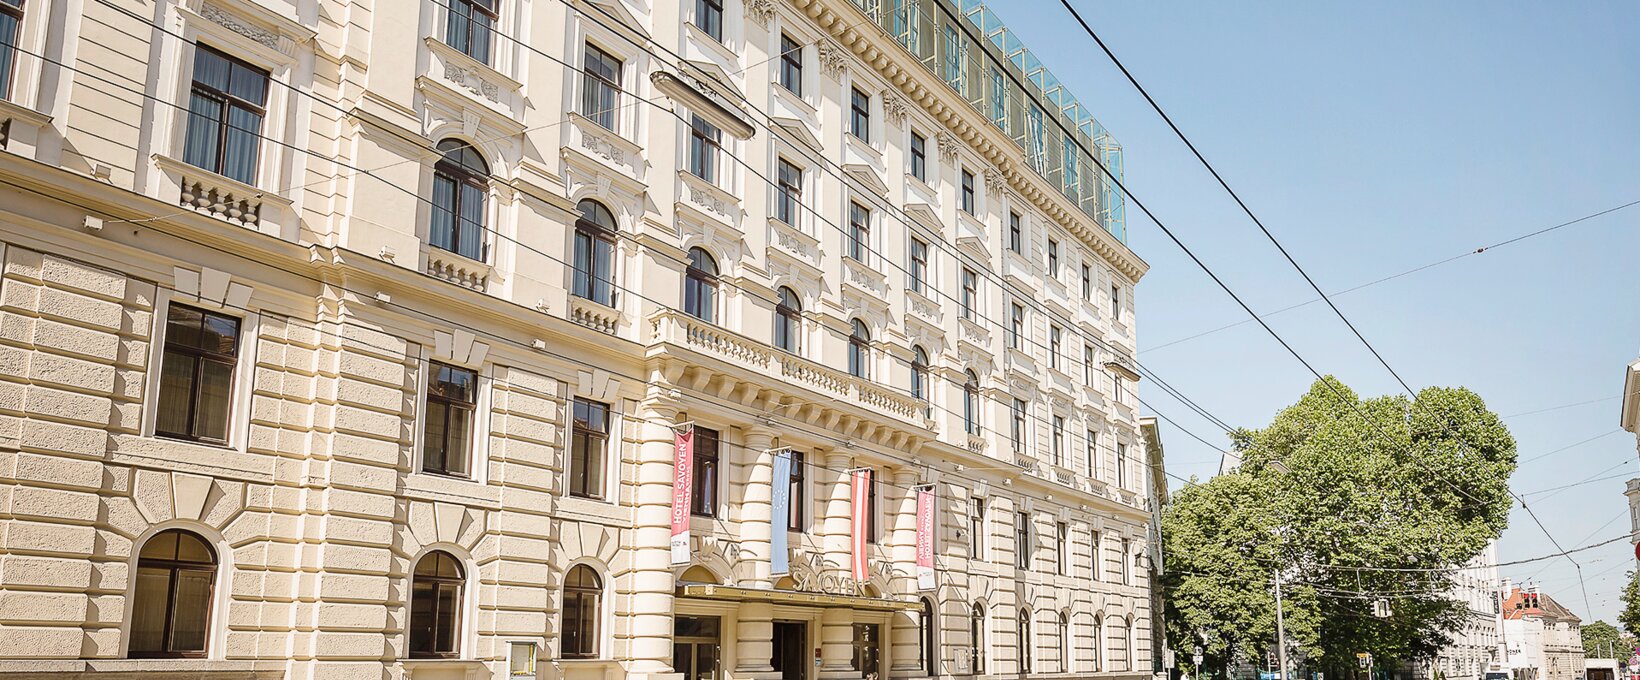 Exterior view hotel building | Hotel Savoyen Vienna